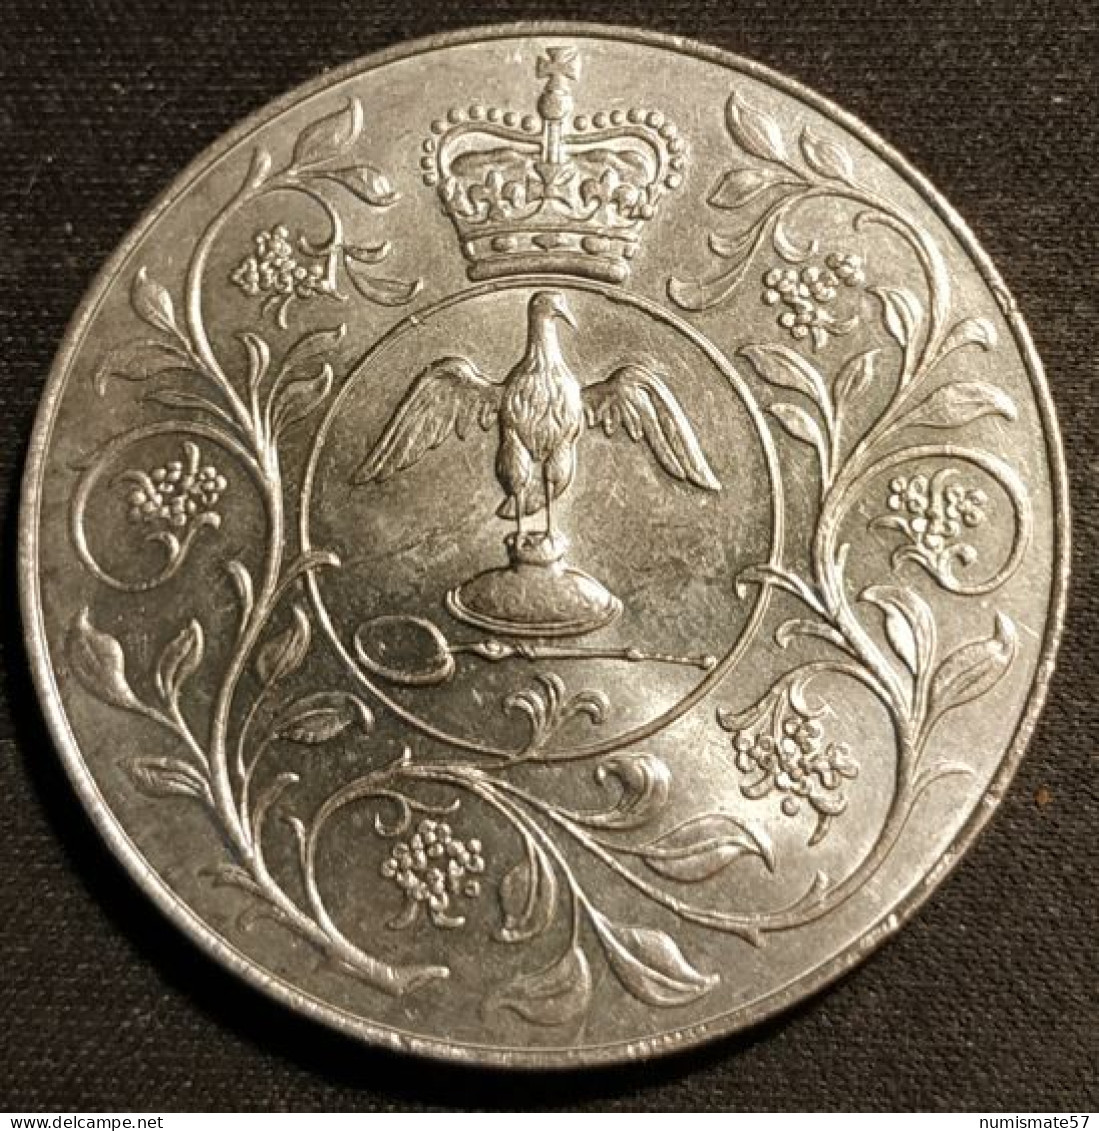 GRANDE BRETAGNE - 25 PENCE 1977 - Jubilé D'argent De Règne - KM 920 - ( Great Britain ) - 25 New Pence